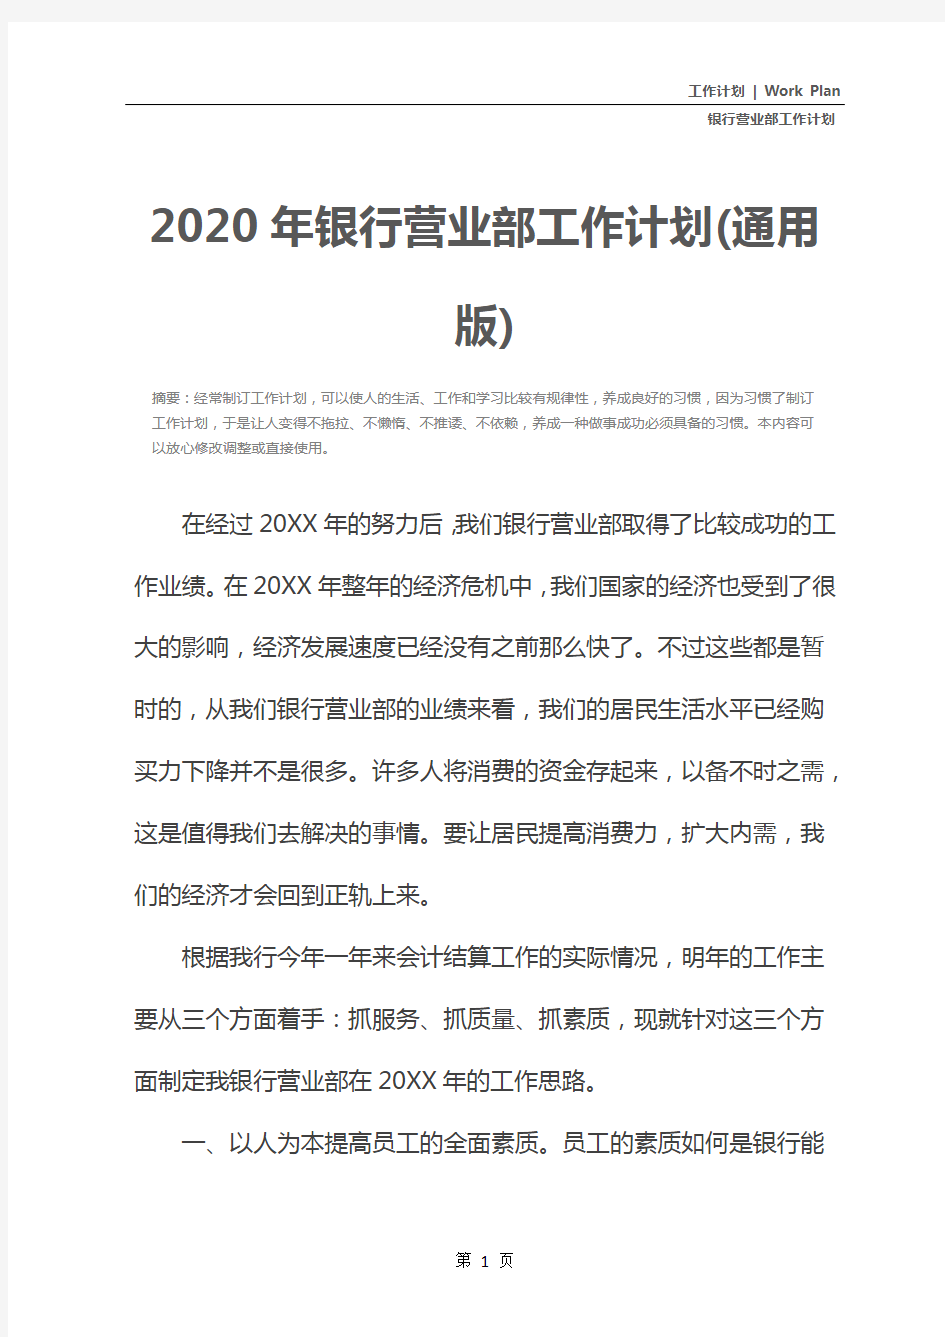 2020年银行营业部工作计划(通用版)